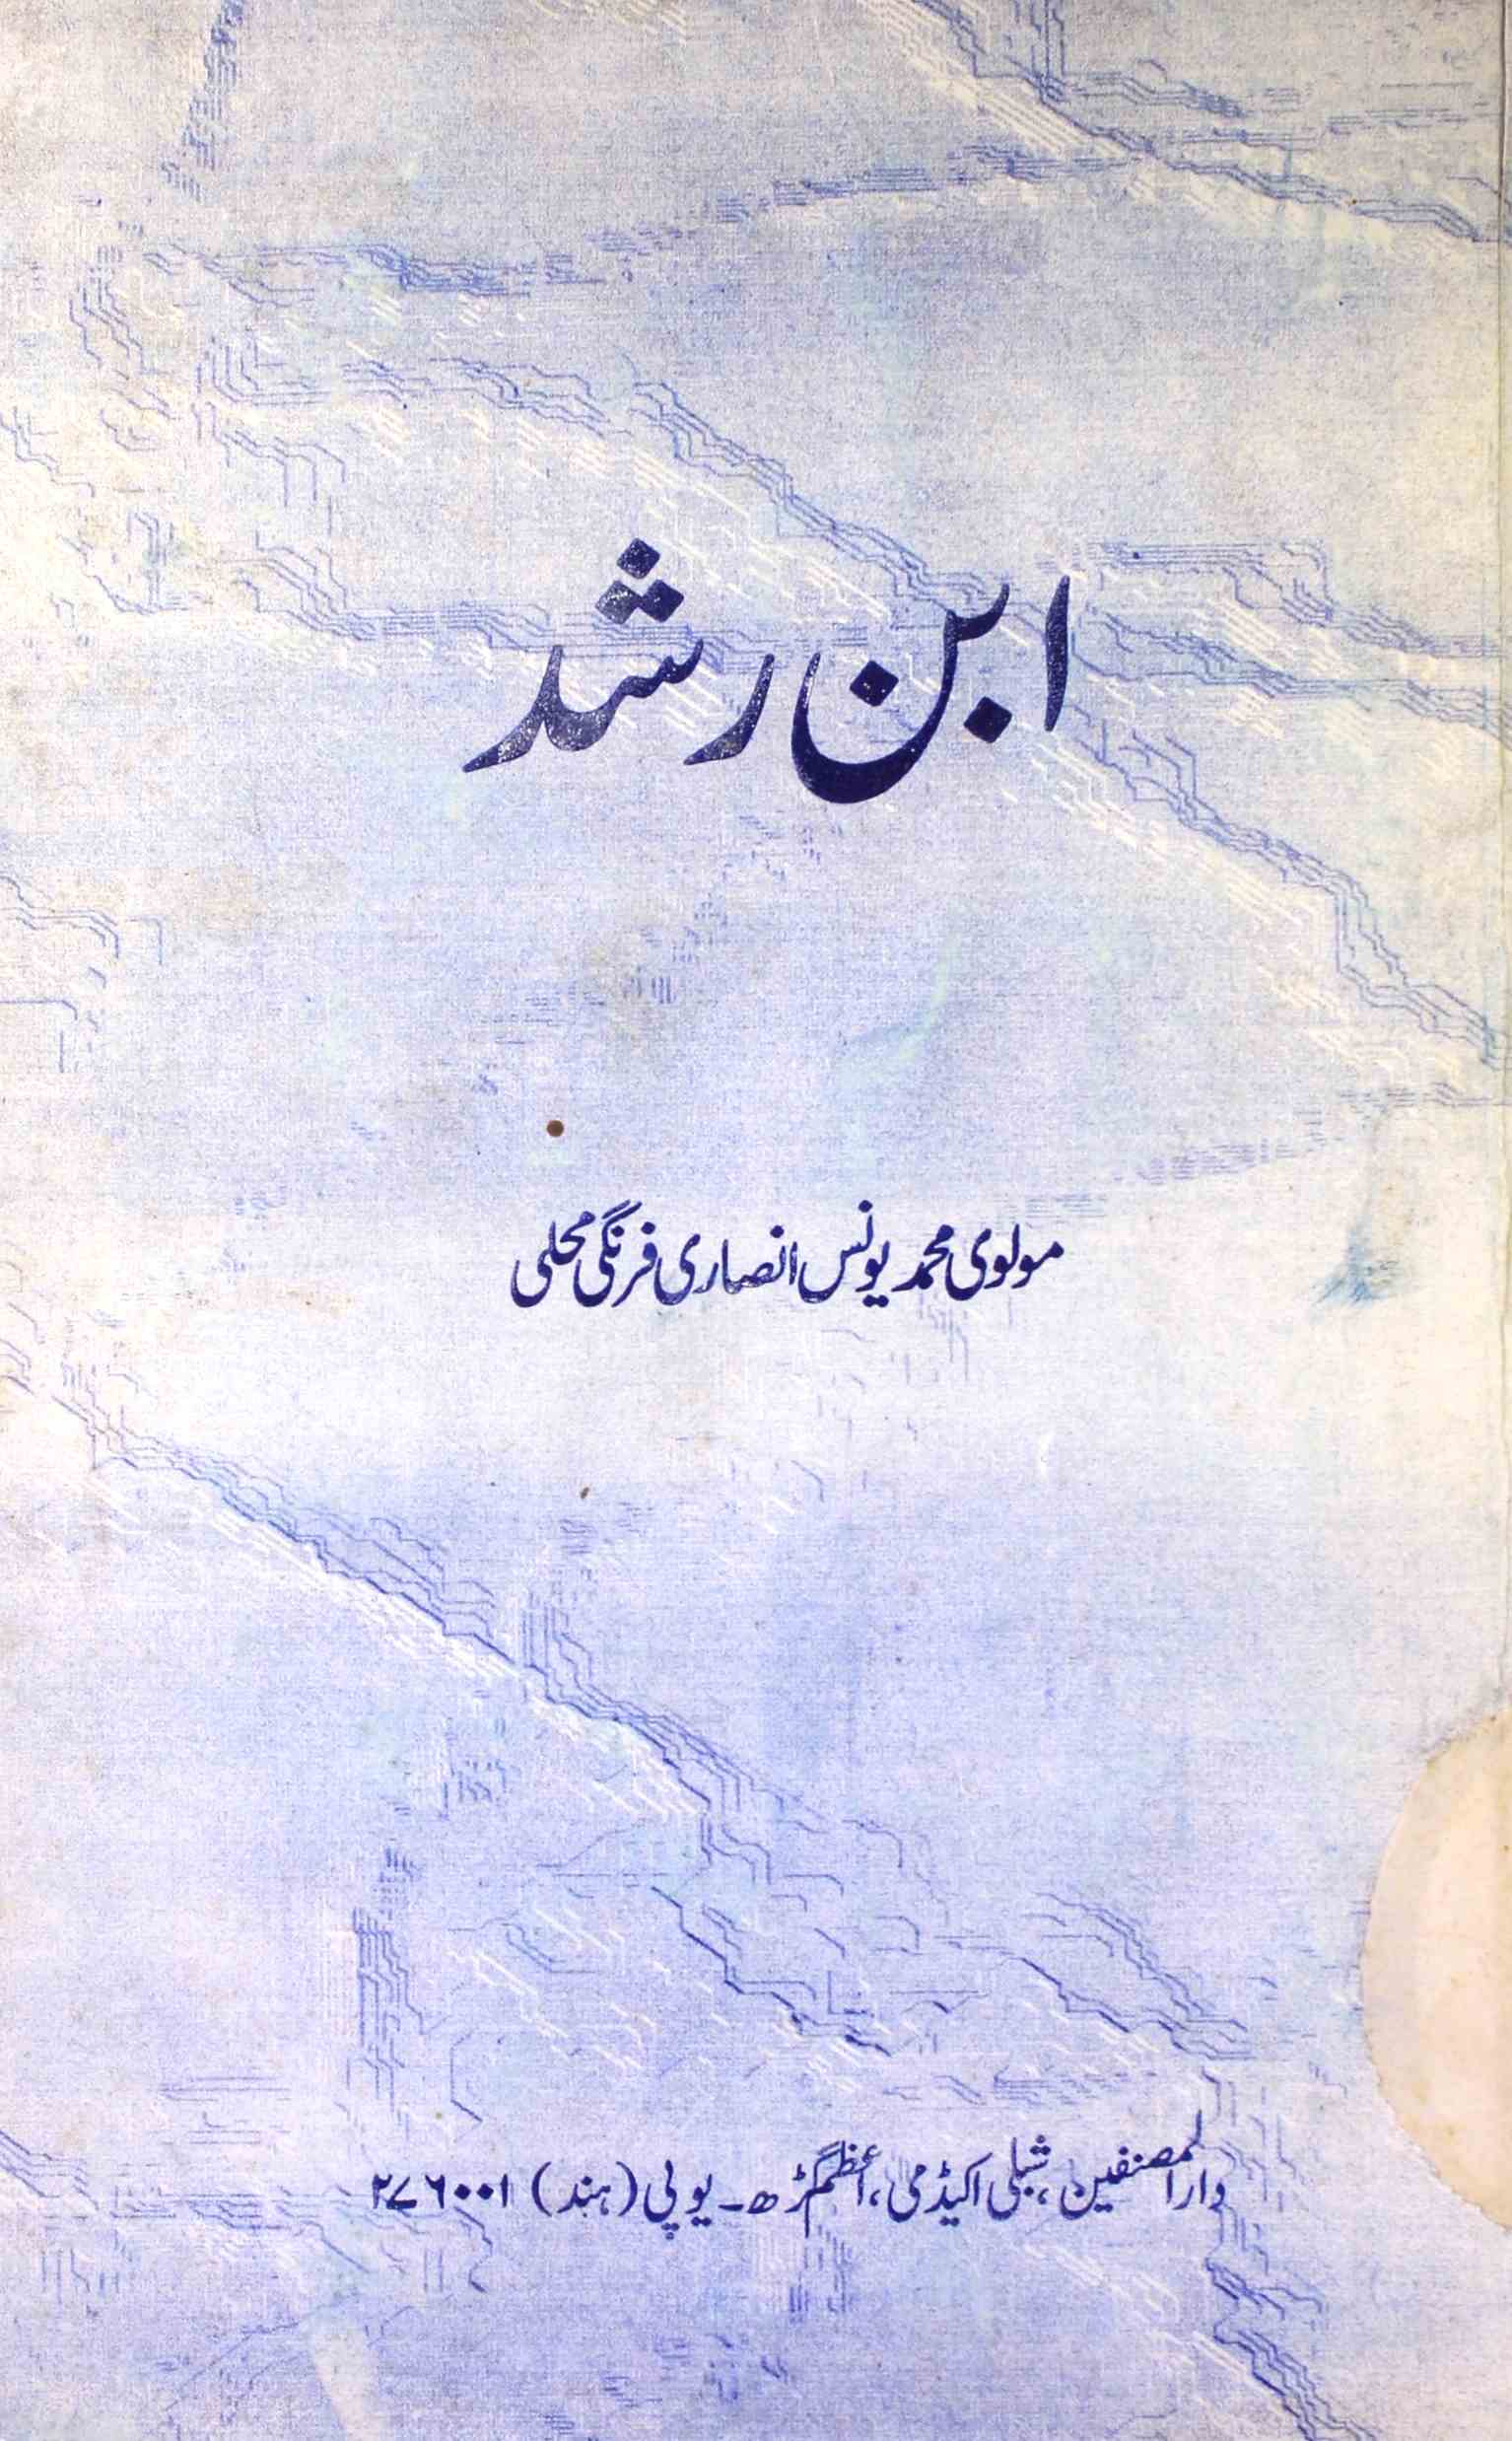 Ibn-e-Rushd